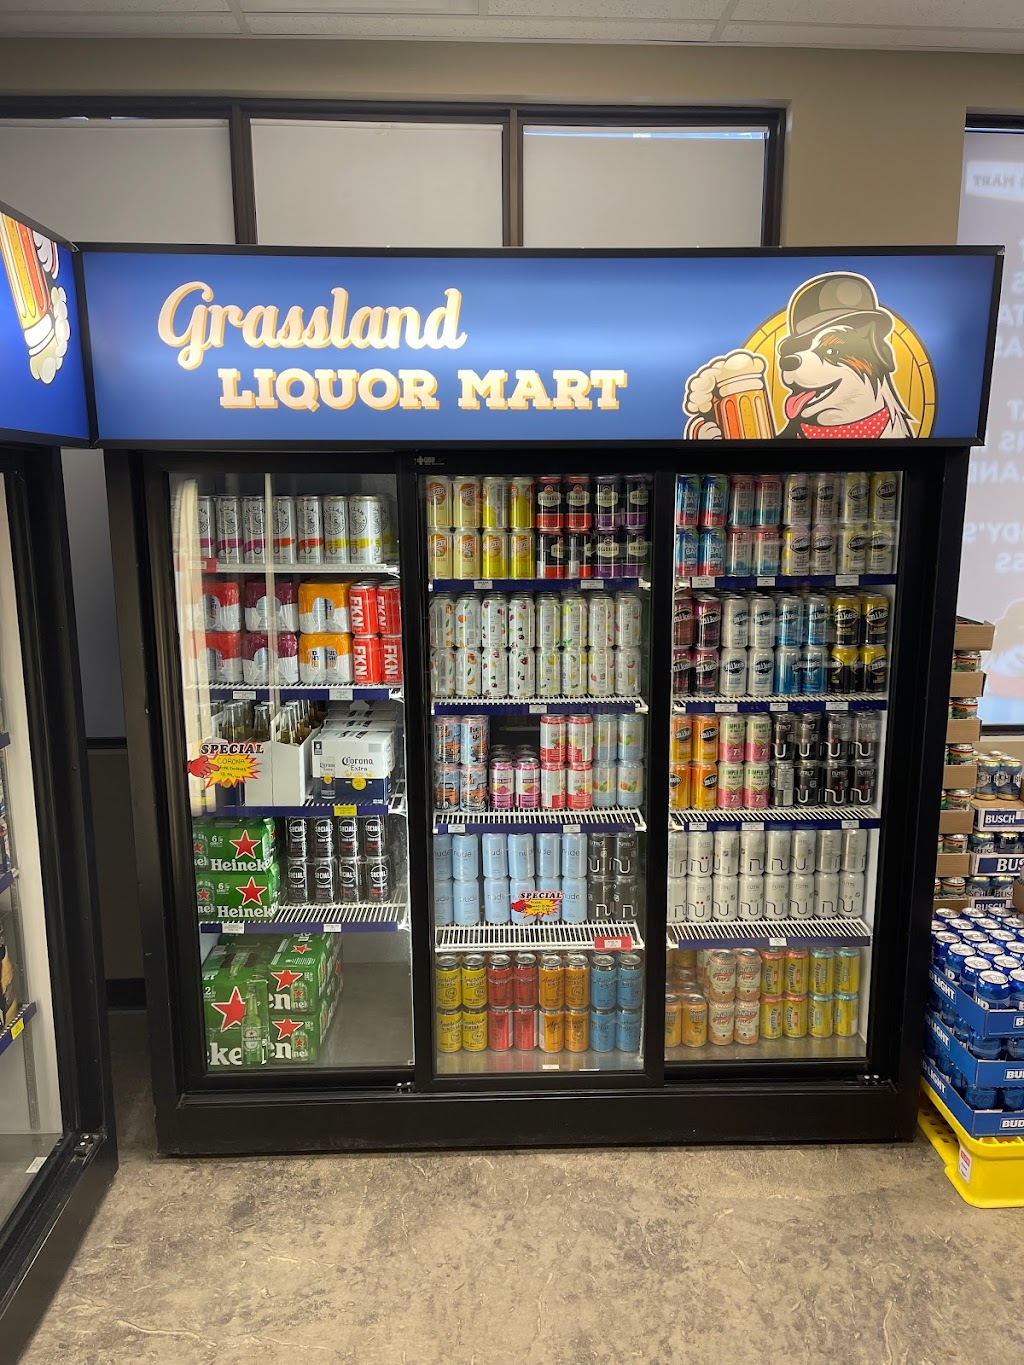 Grassland Liquor Mart | store | AB-63, Grassland, AB T0A 1V0, Canada | 7805252098 OR +1 780-525-2098